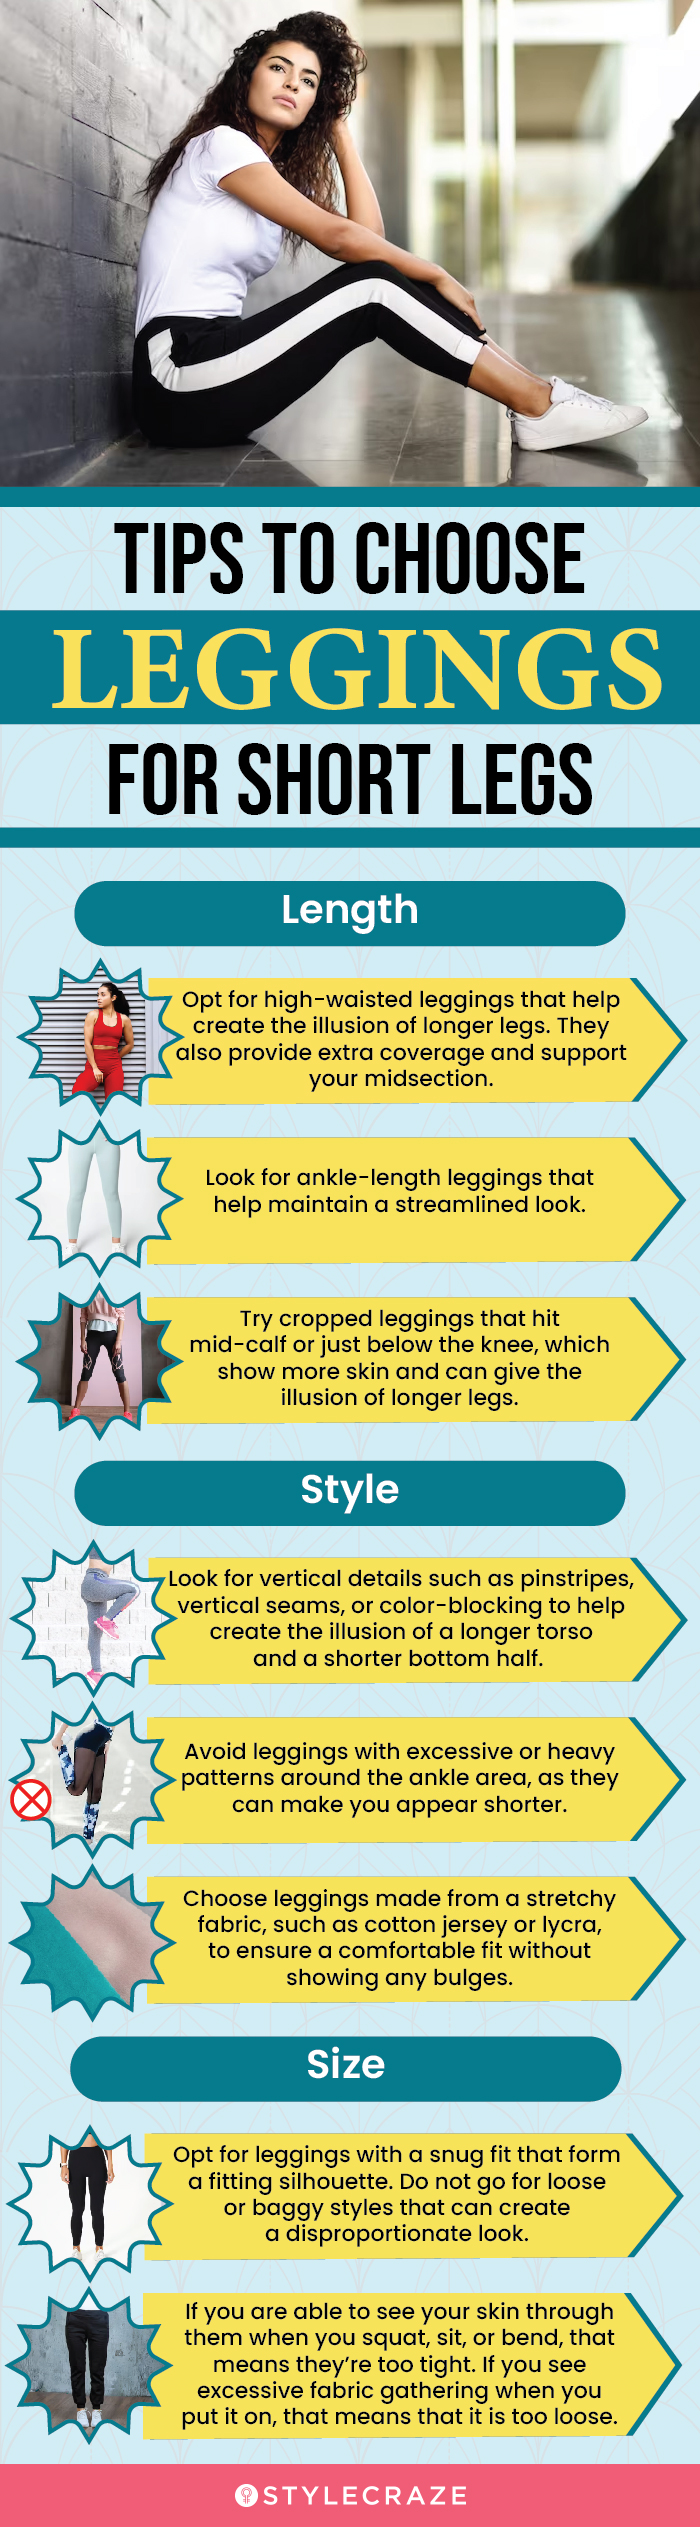 Tips To Choose Leggings For Short Legs (infographic)